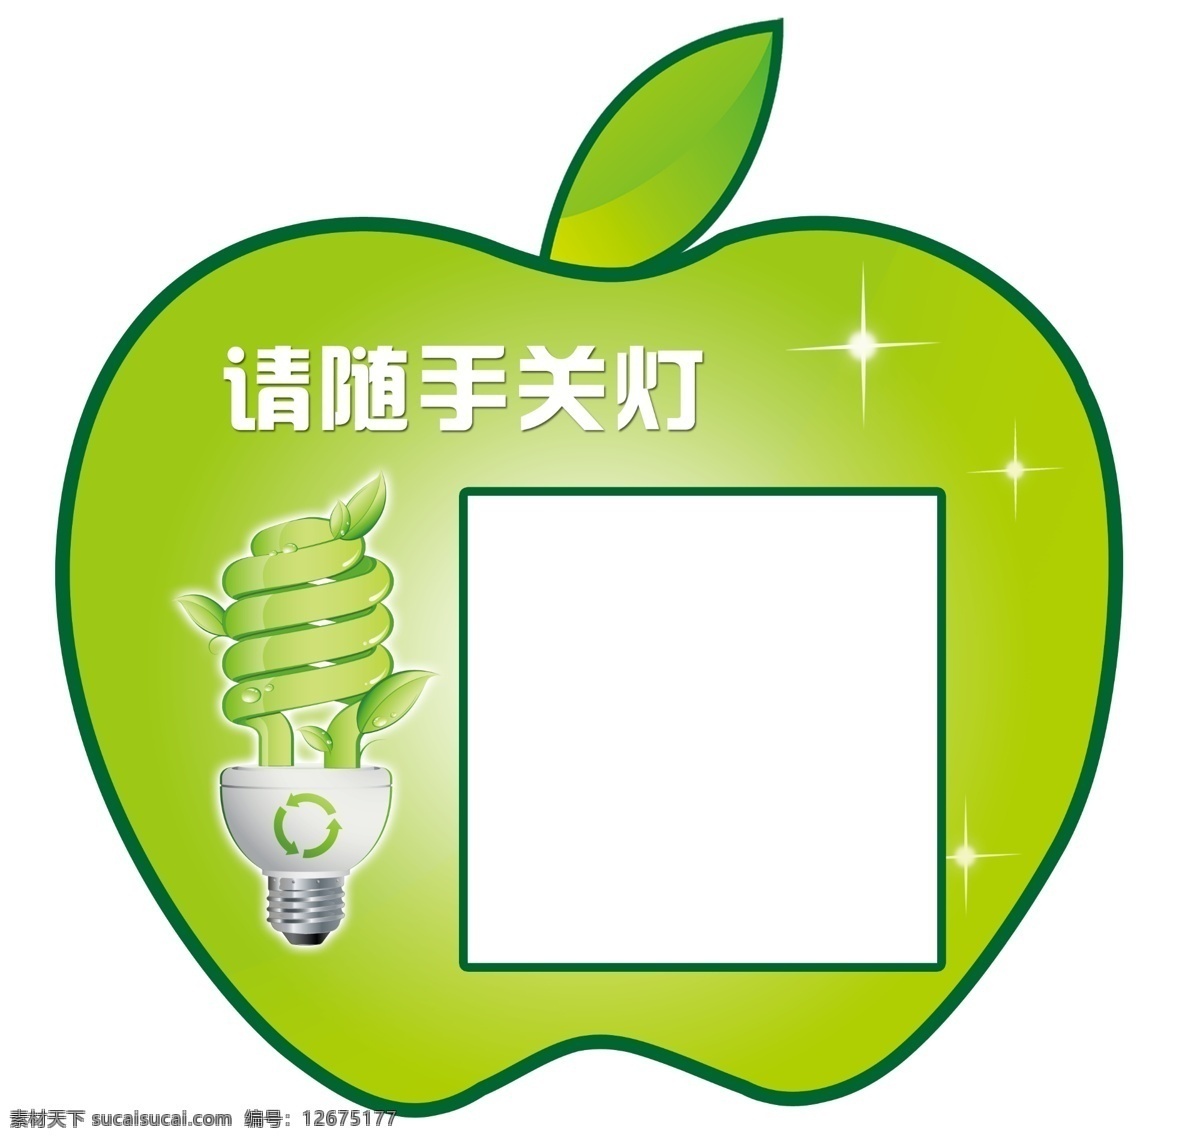 开关贴 环保 苹果 节能灯 绿色 温馨提示